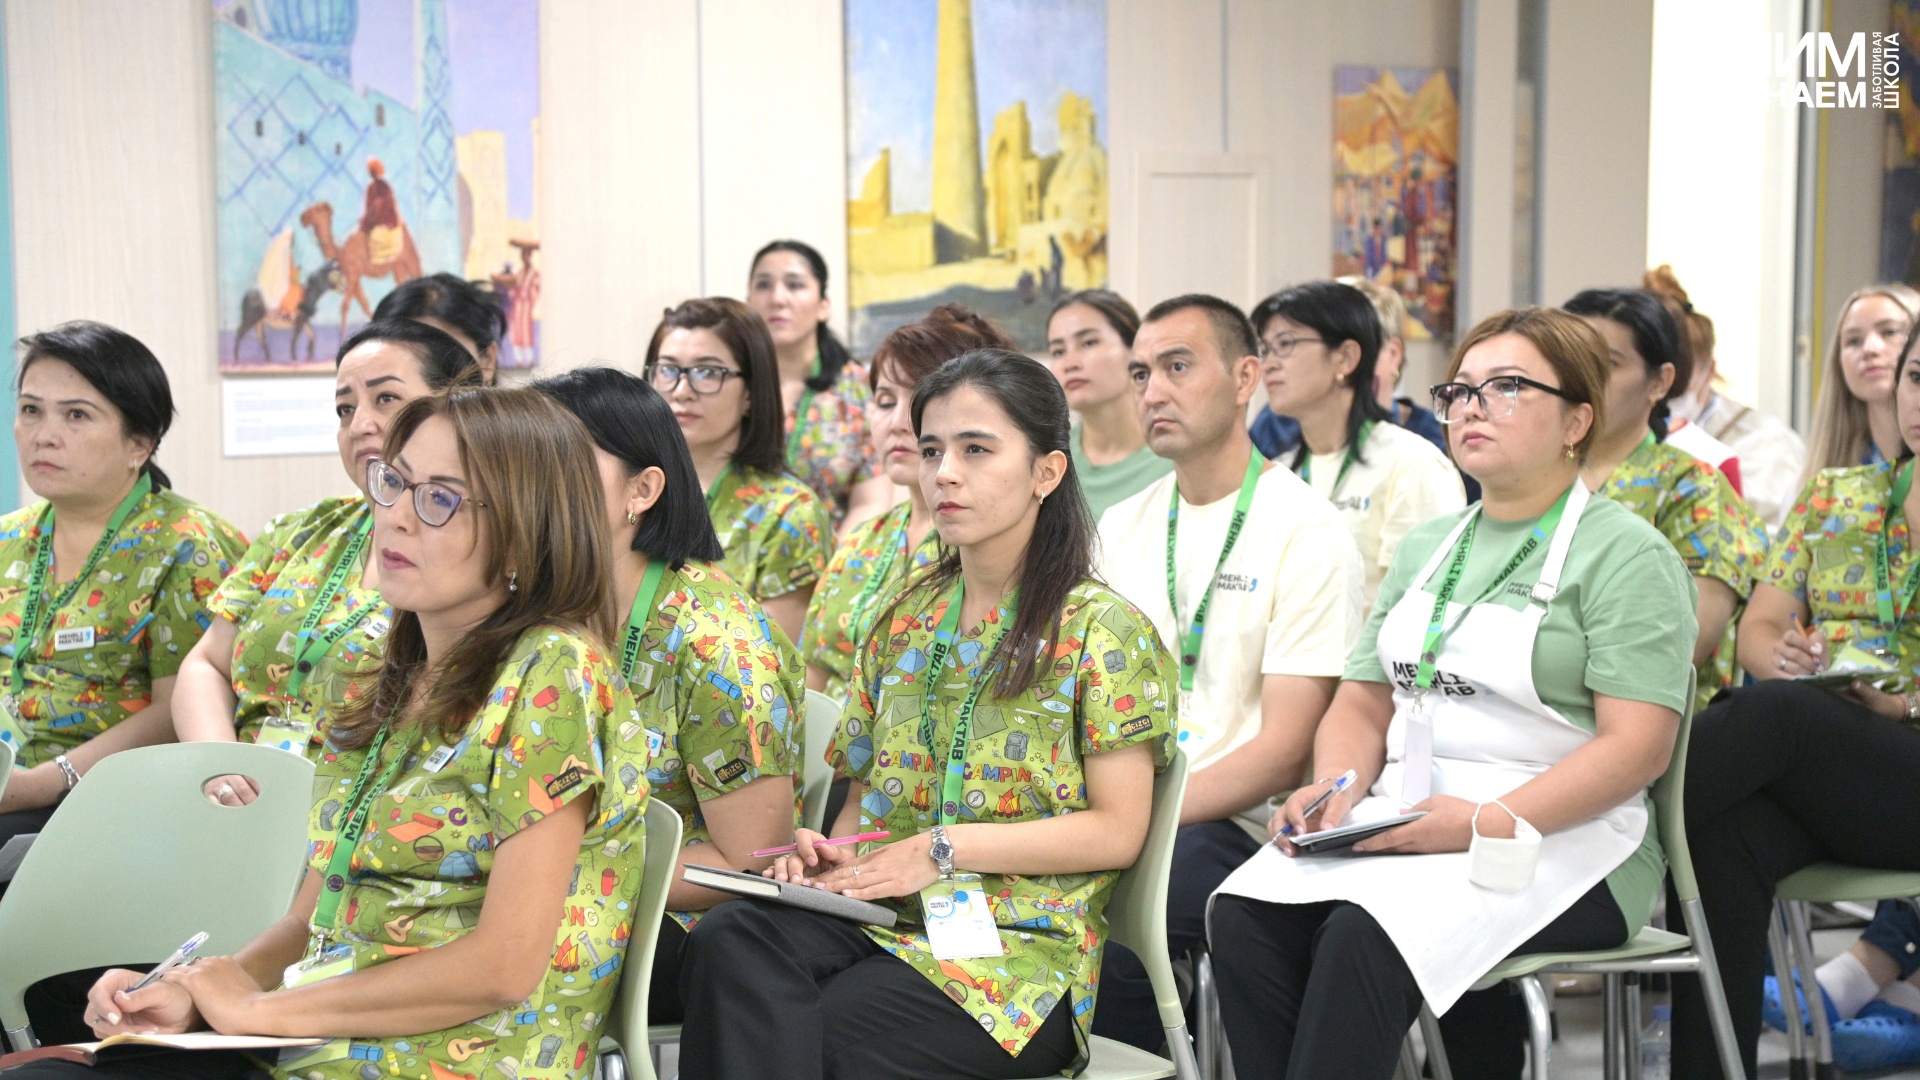 Завершилась важная и насыщенная событиями программа профессиональной стажировочной сессии в городе Ташкенте